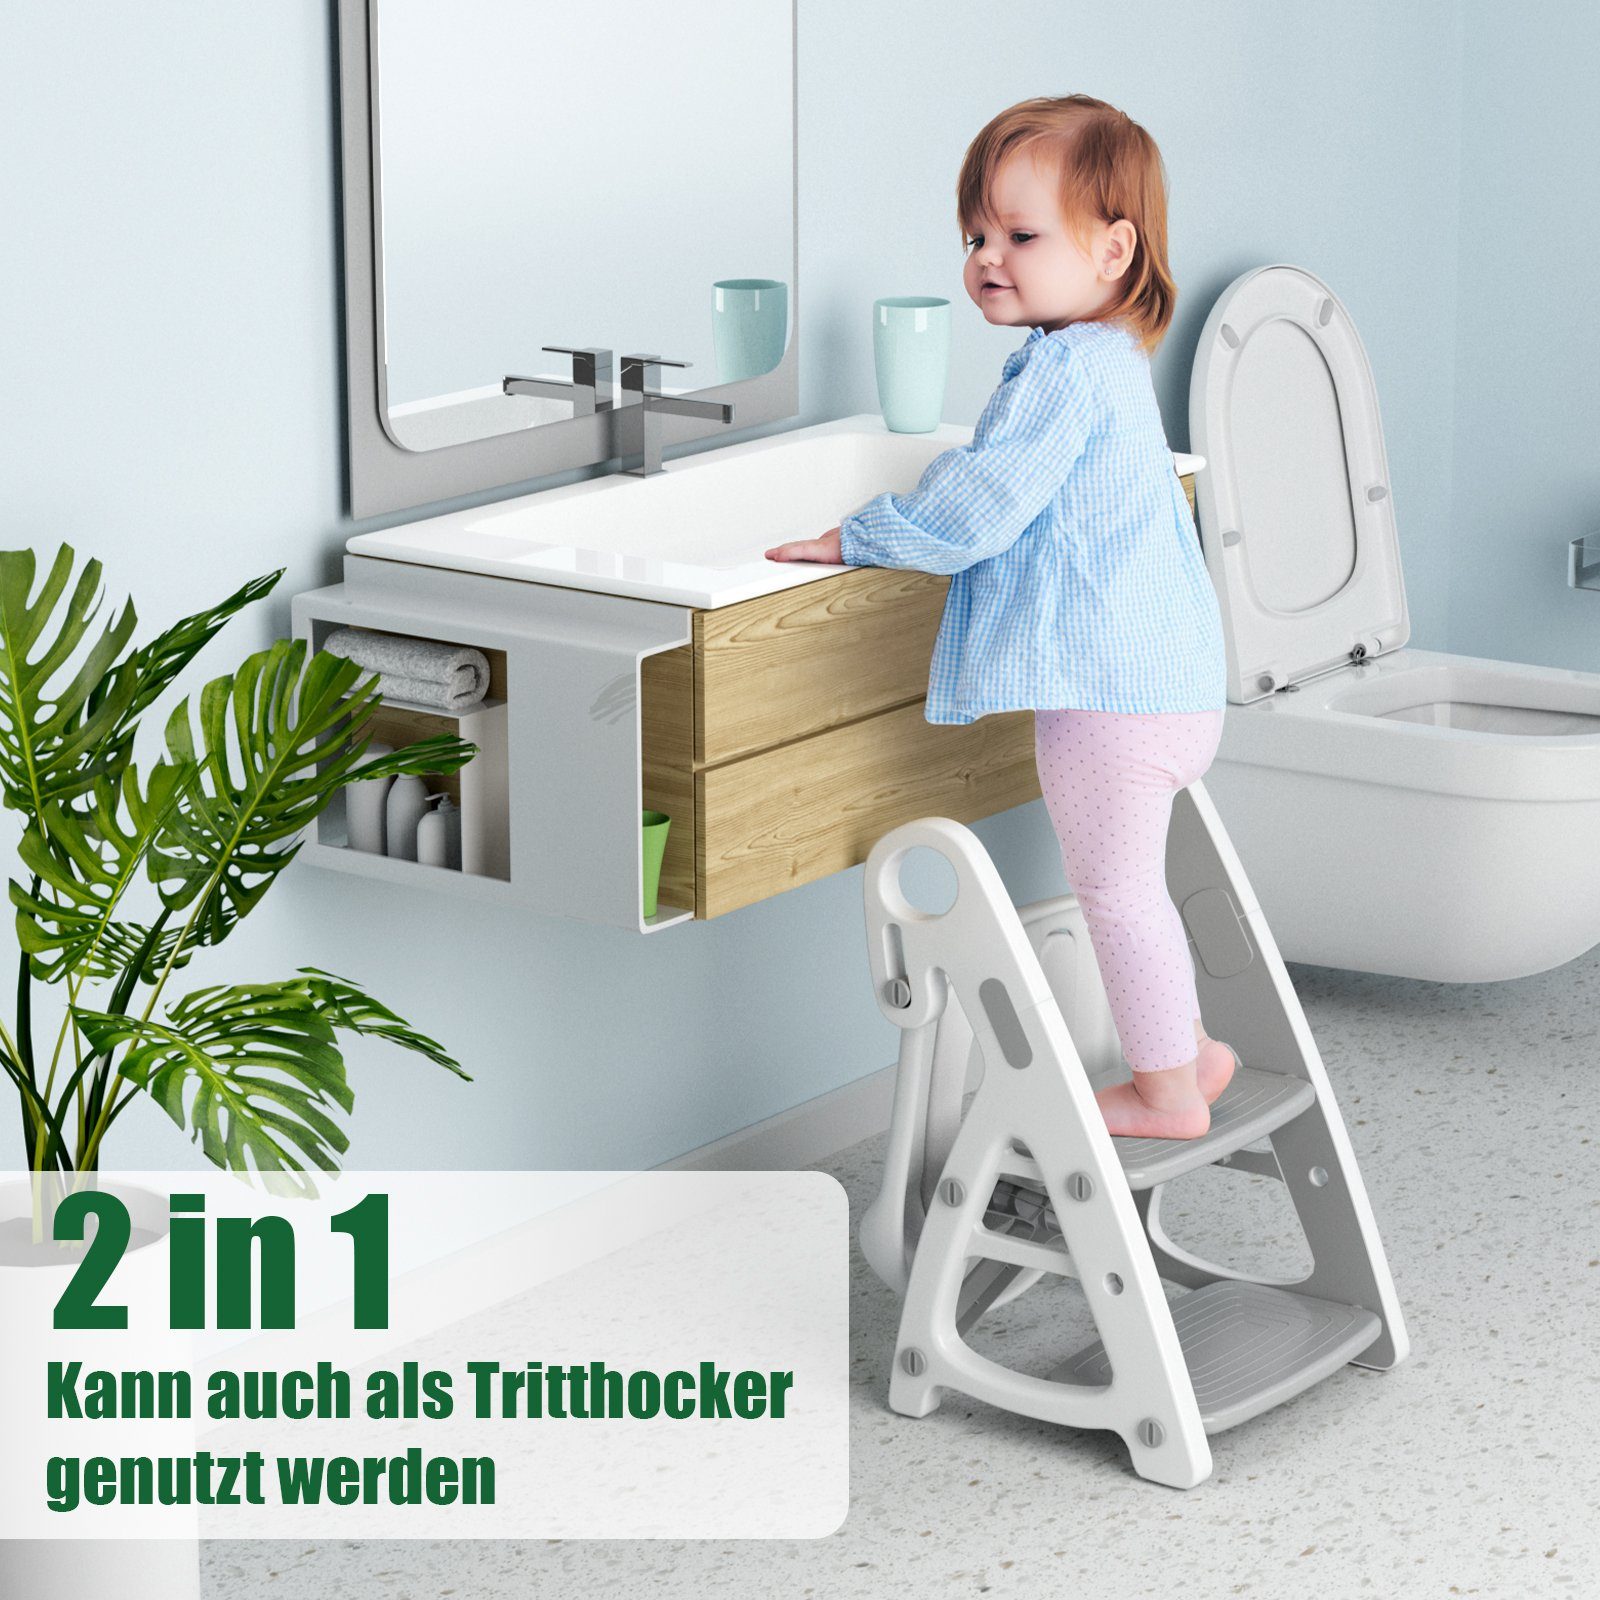 Baby Toilettensitz 2 Toilettentrainer Kinder TLGREEN in mit Treppe, mit Tritthocker Grau 1 Toilettensitz